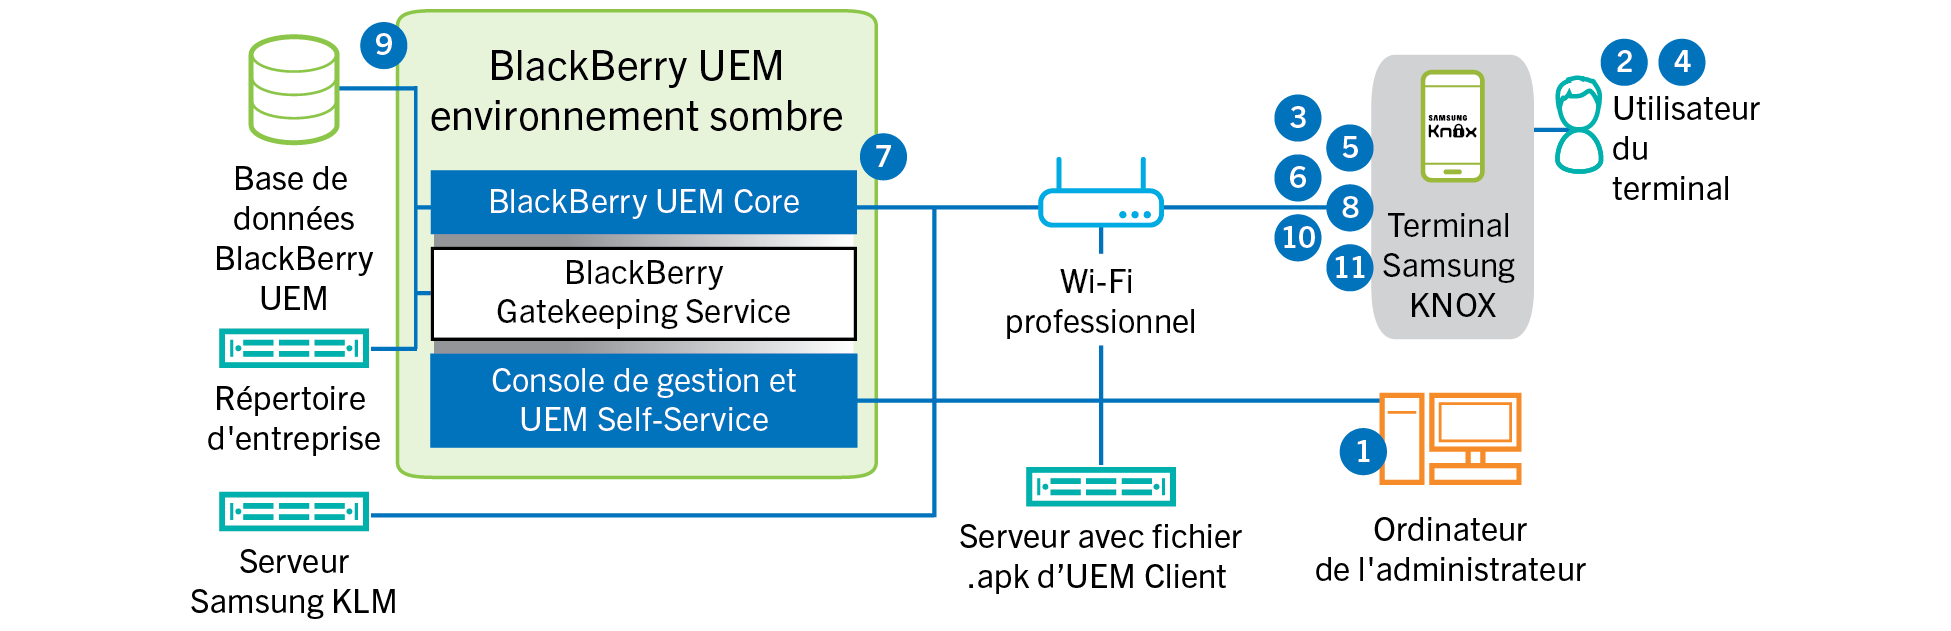 Schéma illustrant les étapes suivies et les composants BlackBerry UEM utilisés lors de l'activation d'un terminal Android Enterprise dans un environnement de site sombre